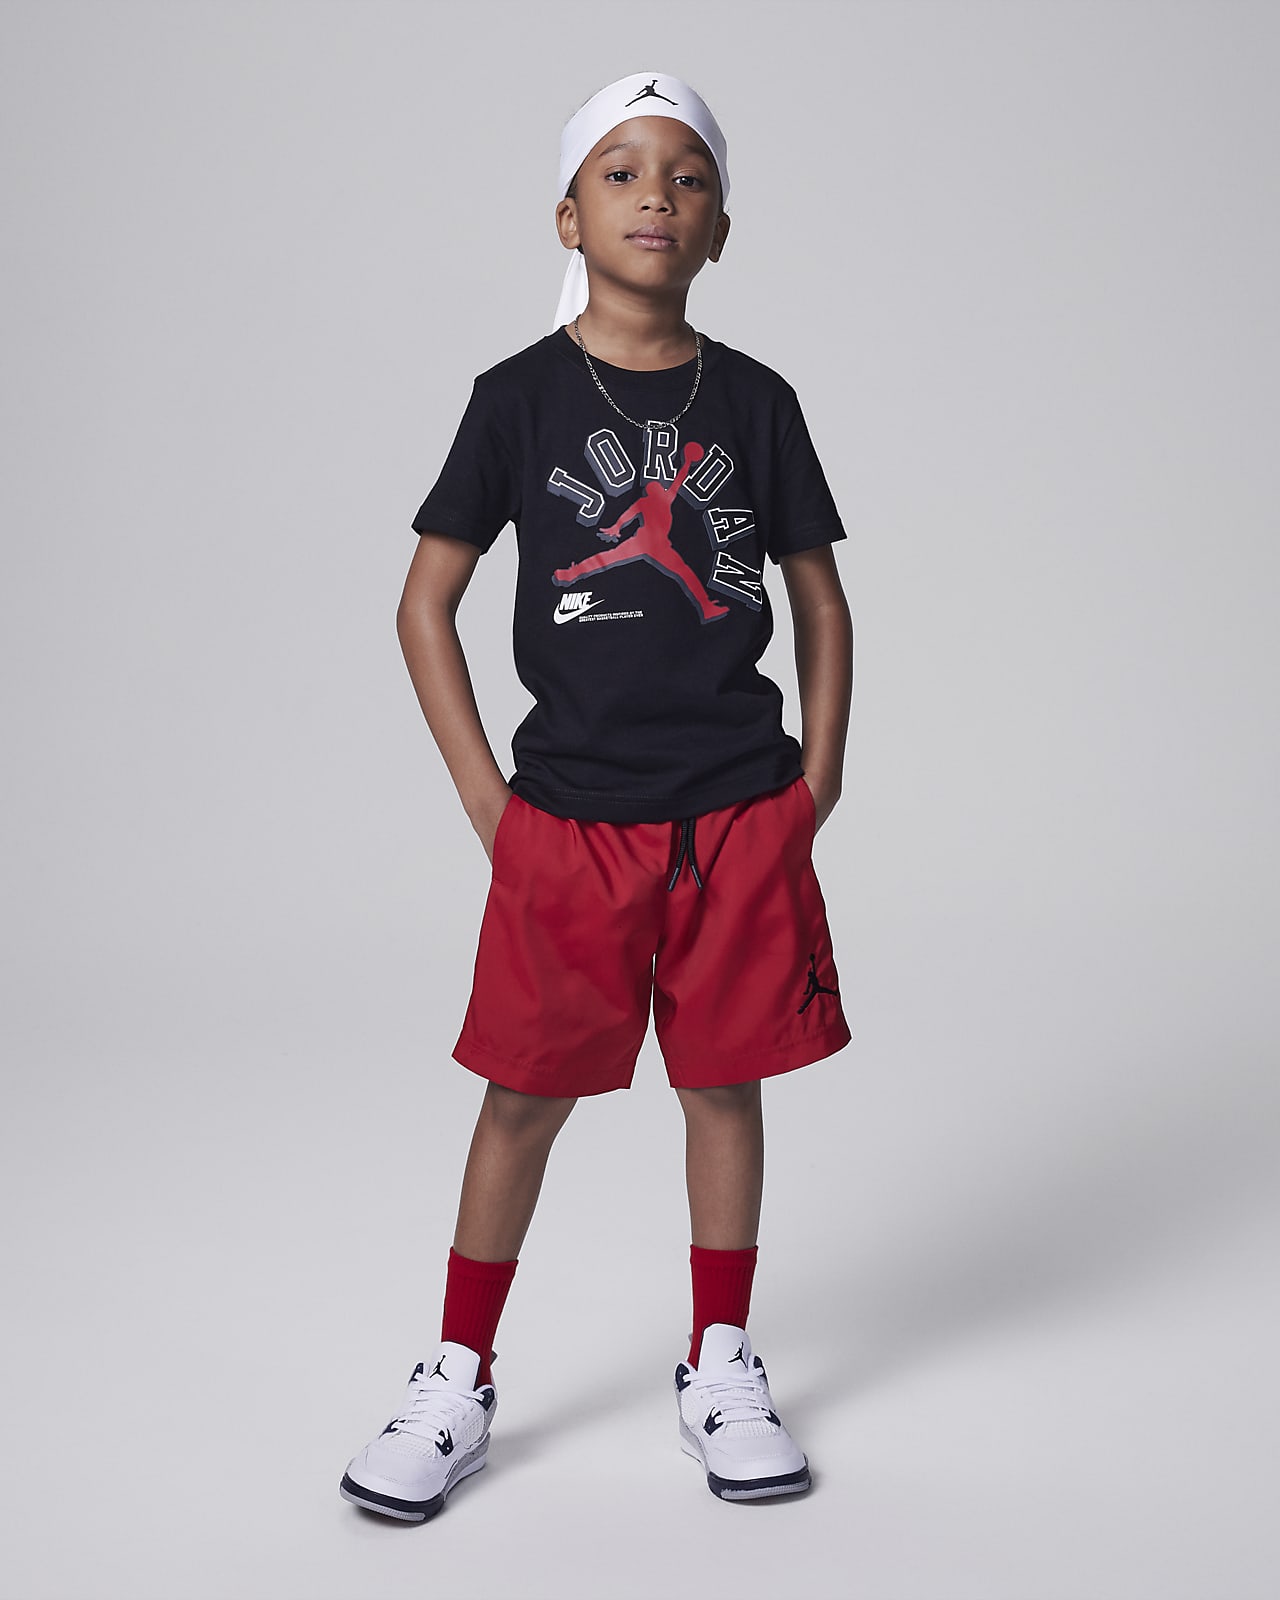 Camiseta Jordan Jumpman para niños